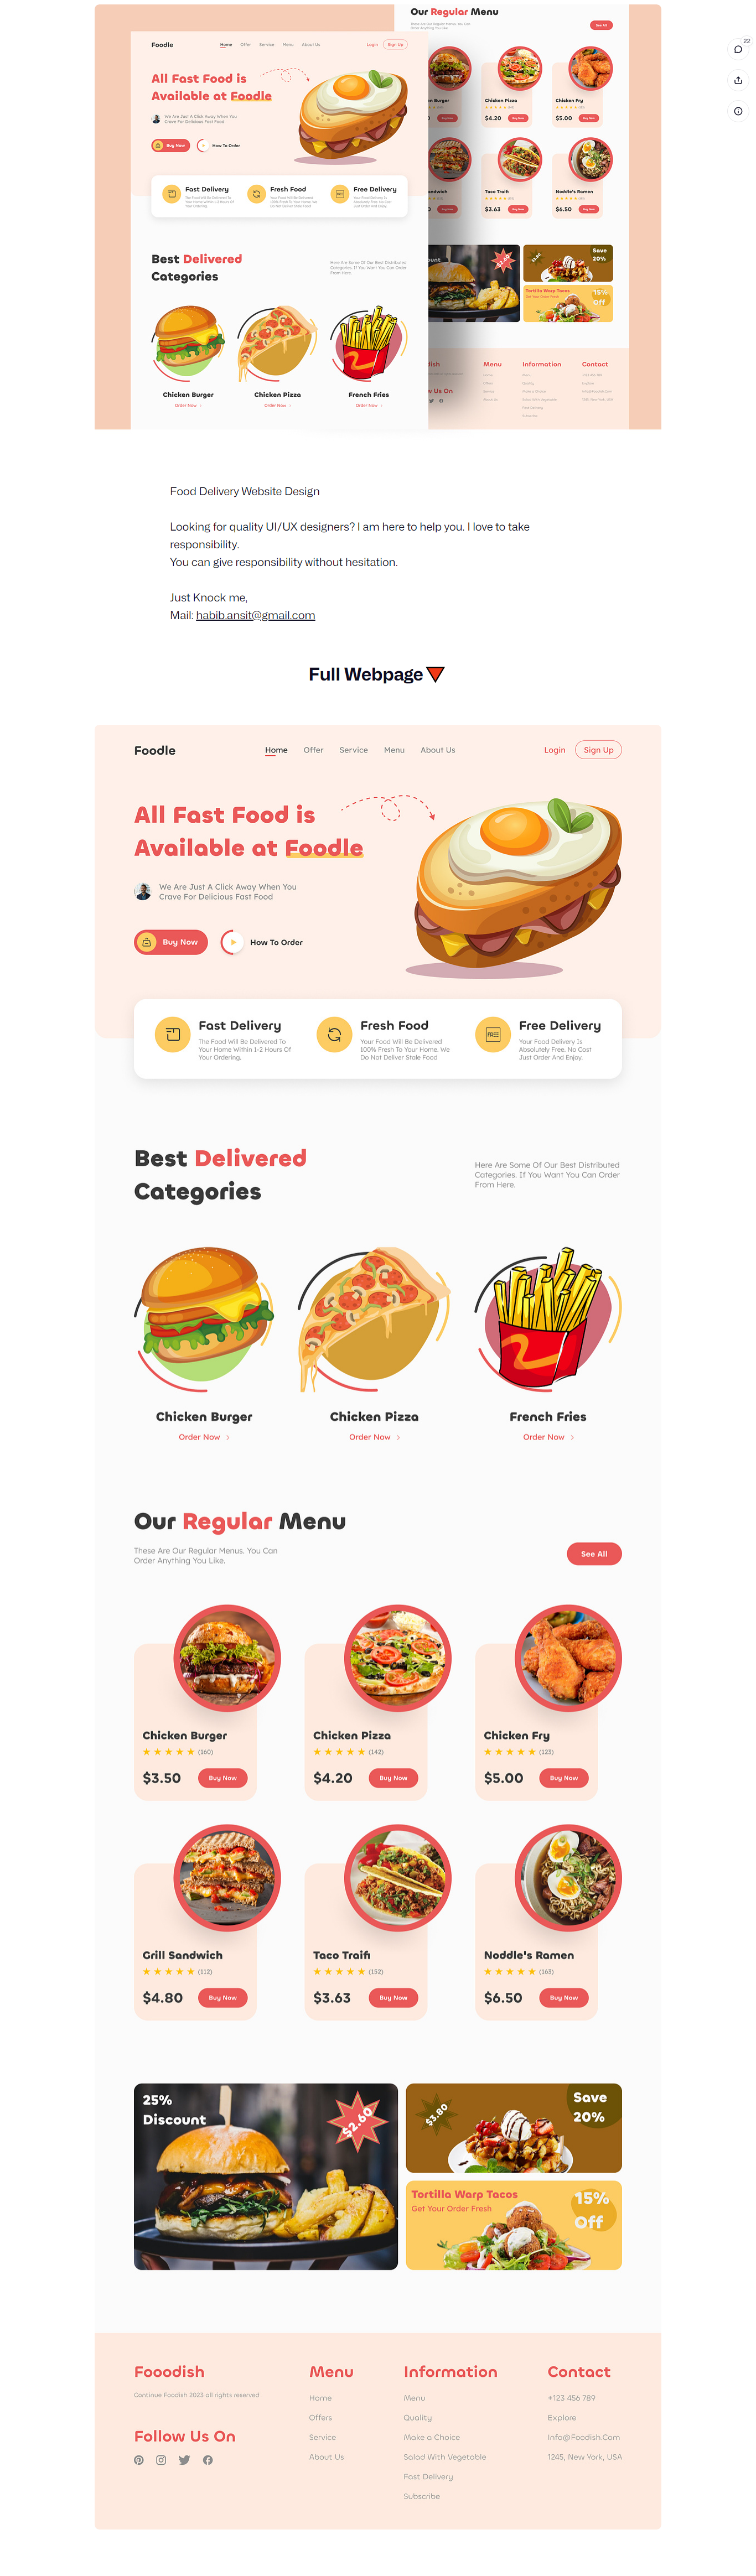 نمونه طراحی سایت شرکتی رستوران و فست فود